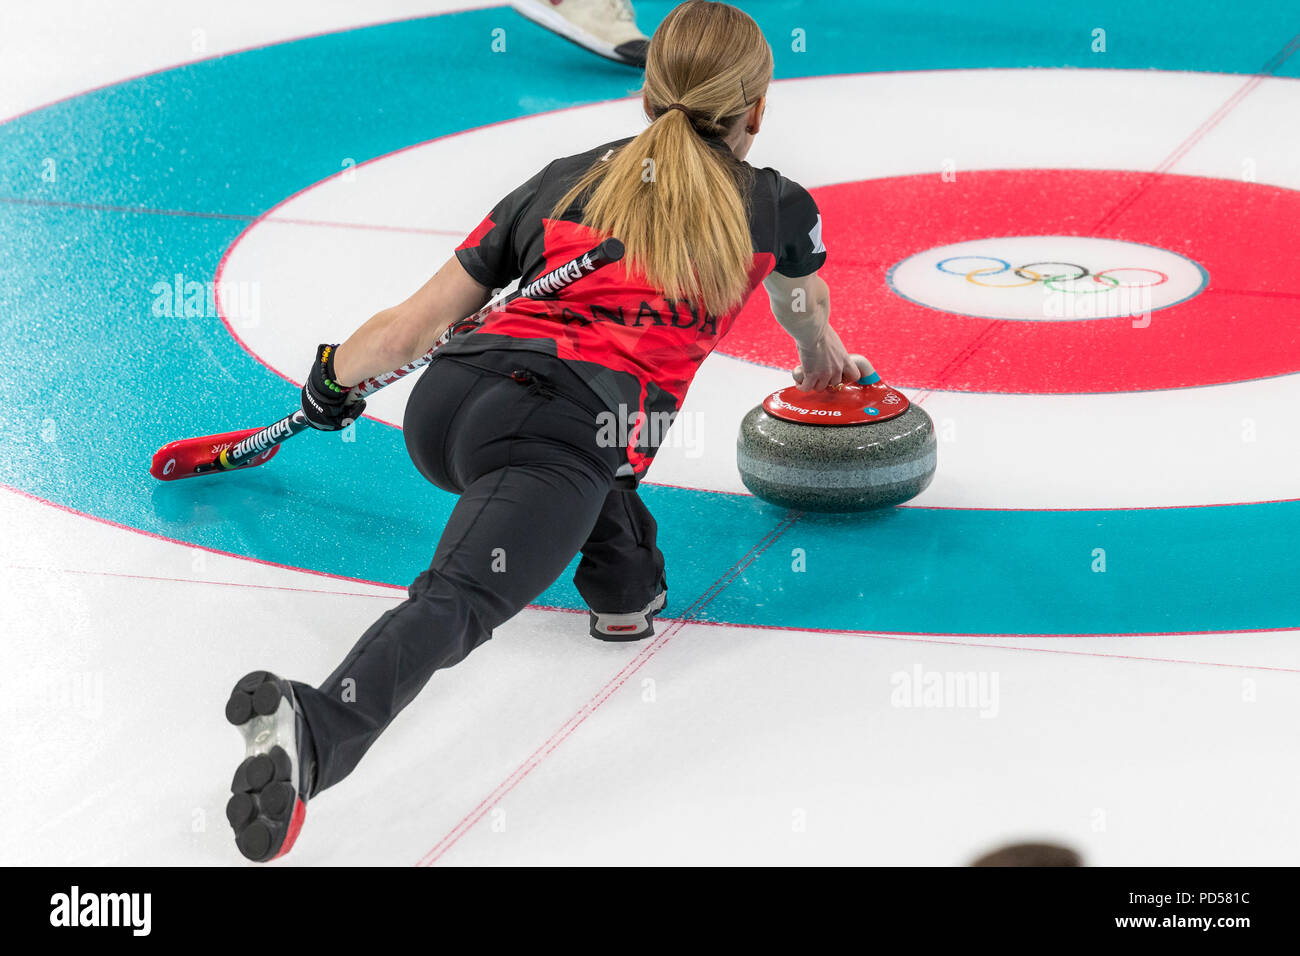 Kaitlyn Lawes (CAN) qui se font concurrence dans le double mixte, round robin de curling aux Jeux Olympiques d'hiver de PyeongChang 2018 Banque D'Images